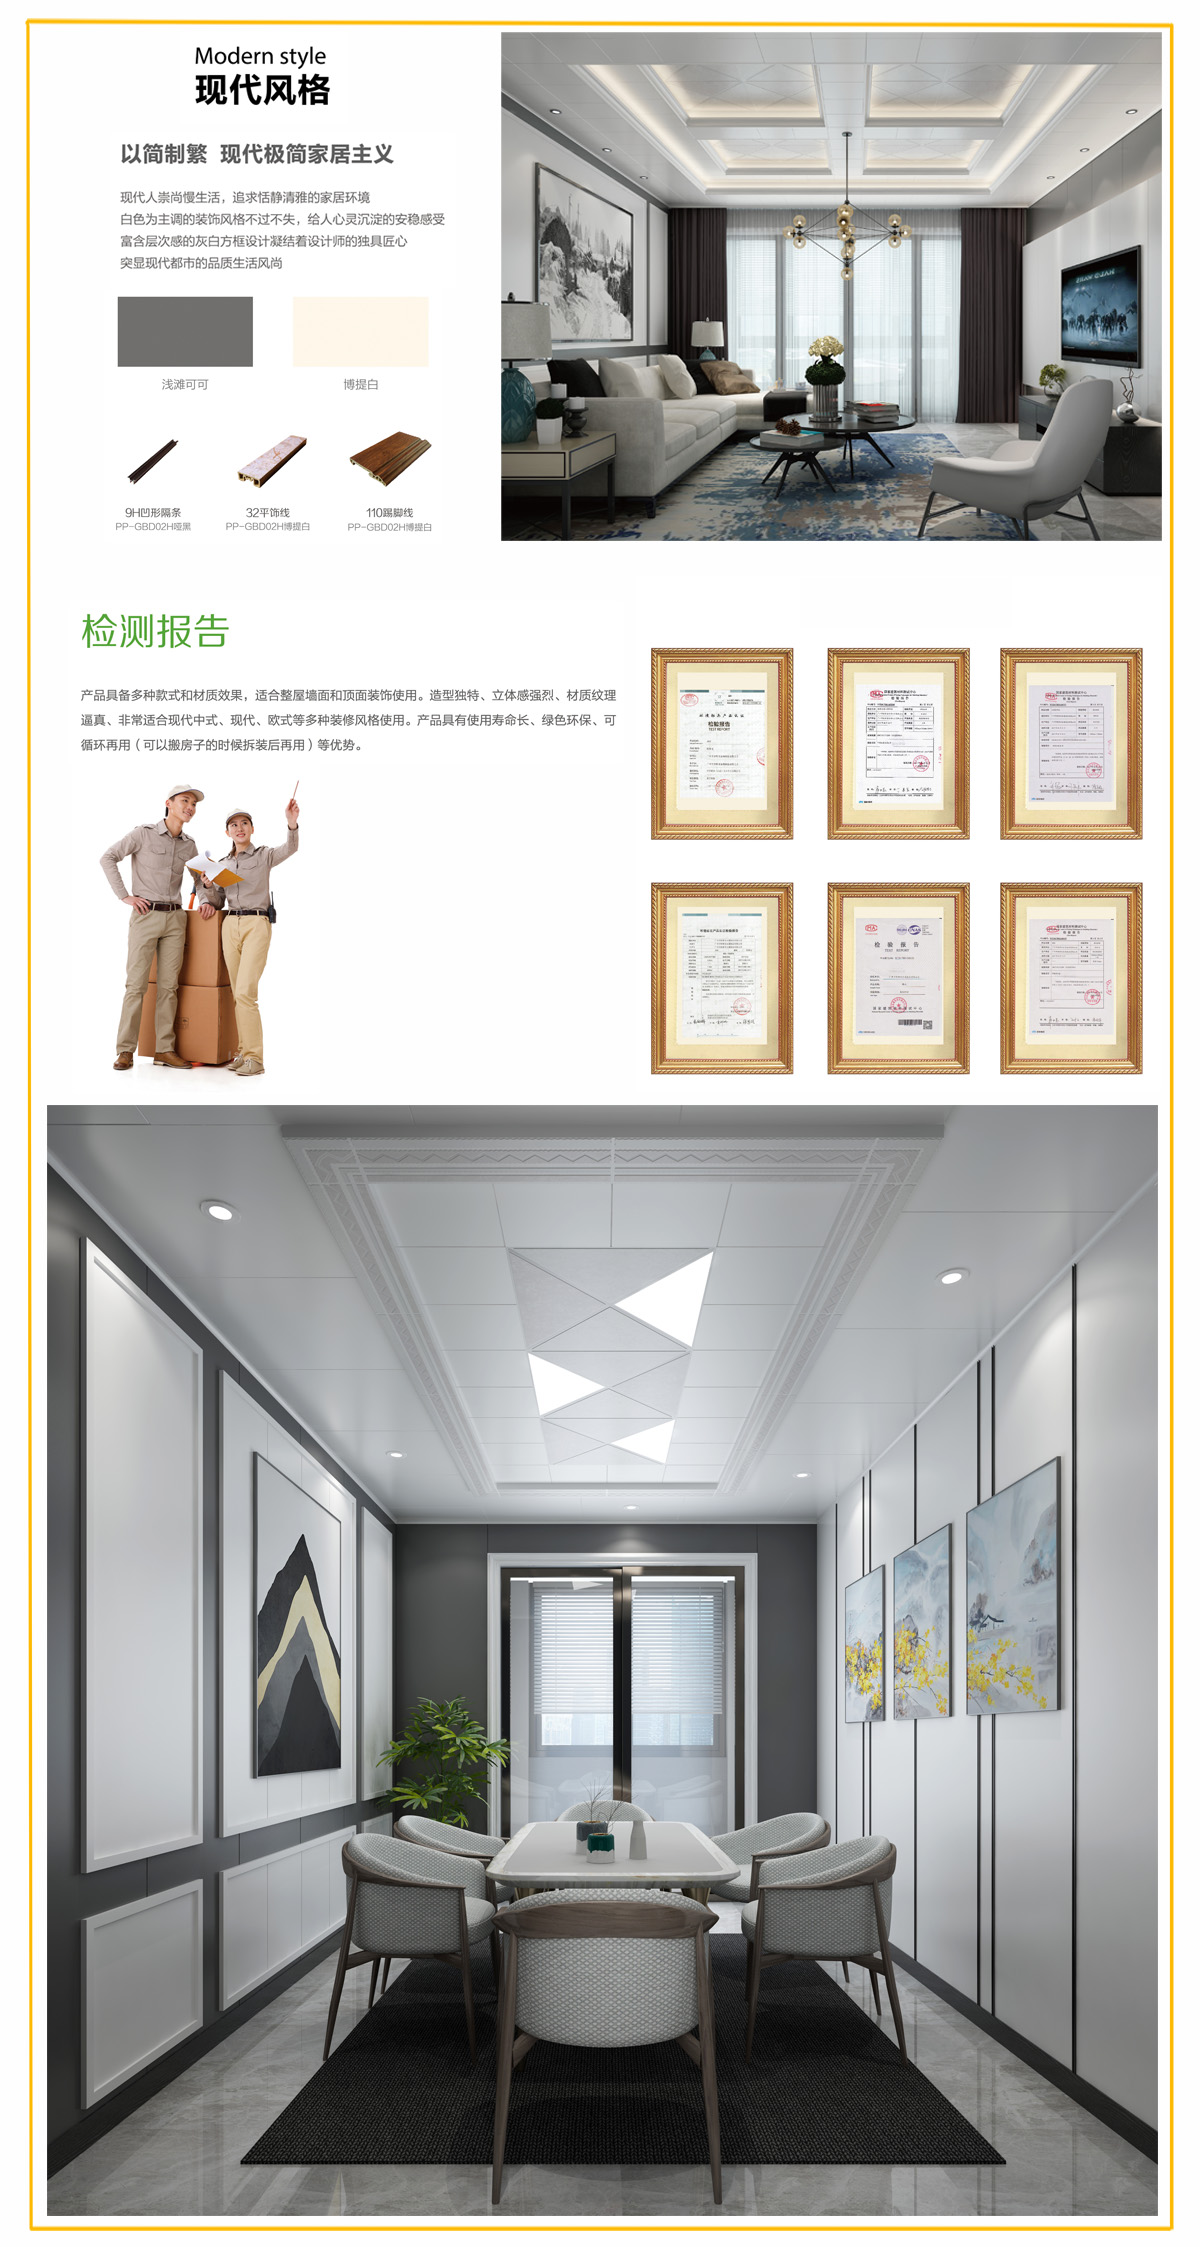 光合木墙板系列展示空间客厅